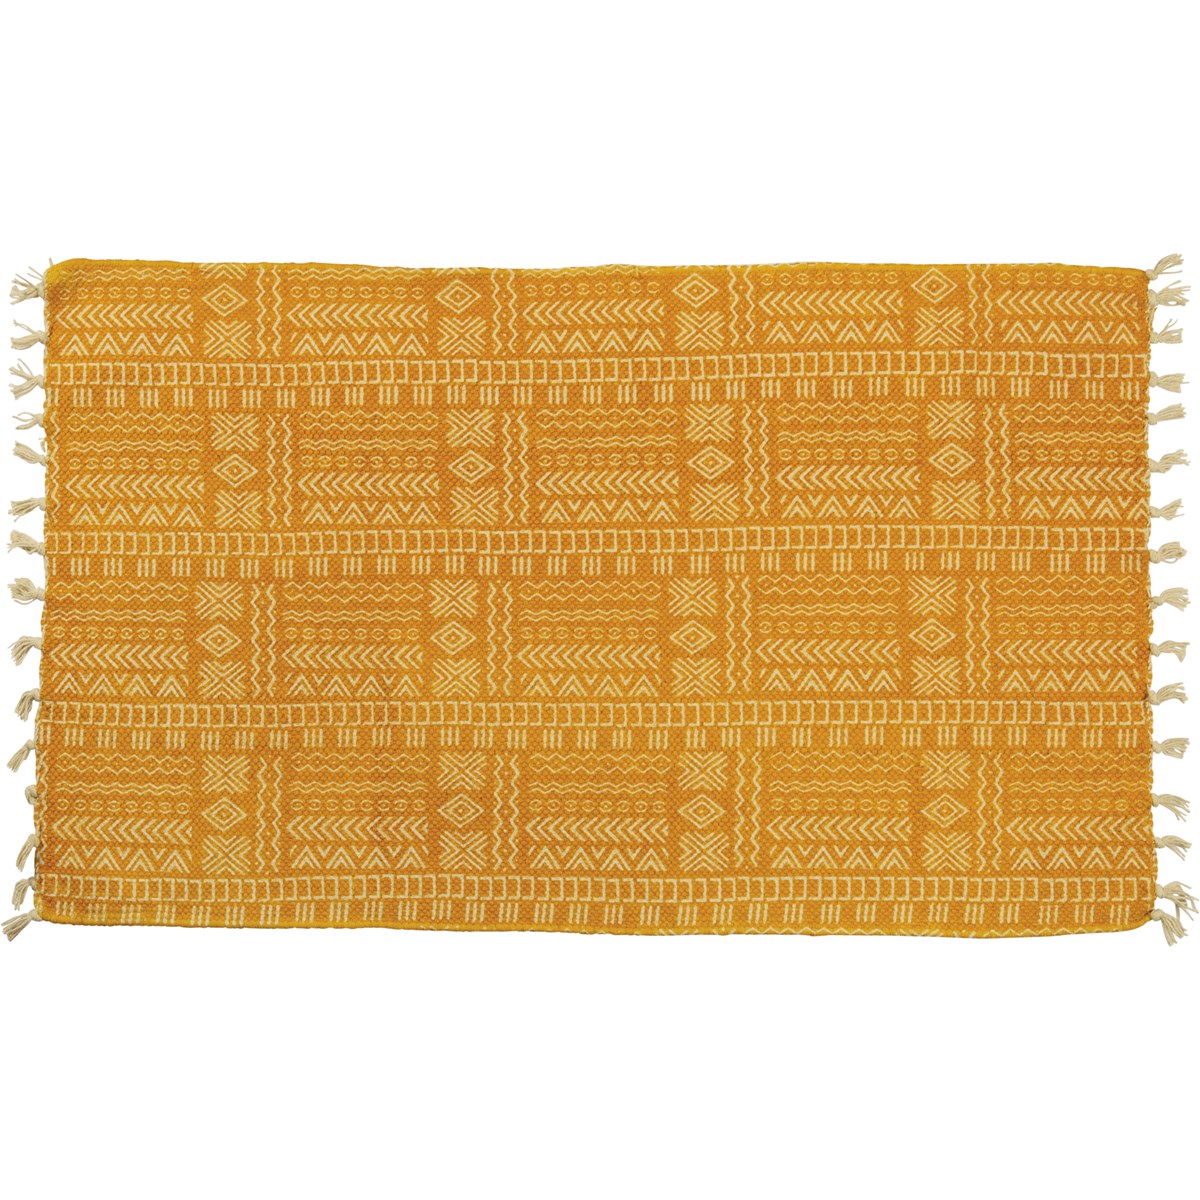 Rug - Saffron Fringe - 34" x 20" - Cotton, Latex skid-resistant backing